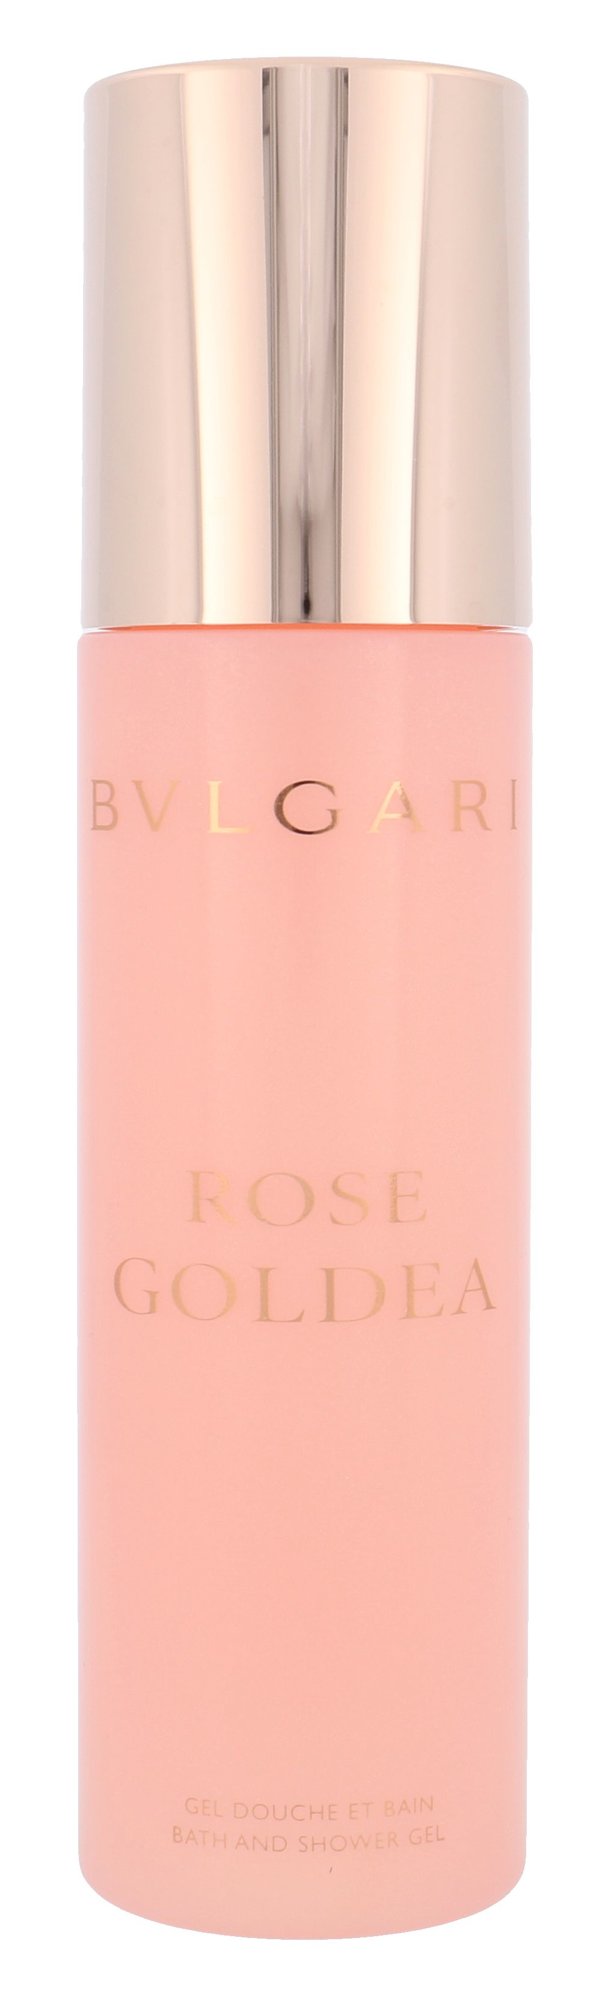 Bvlgari Rose Goldea